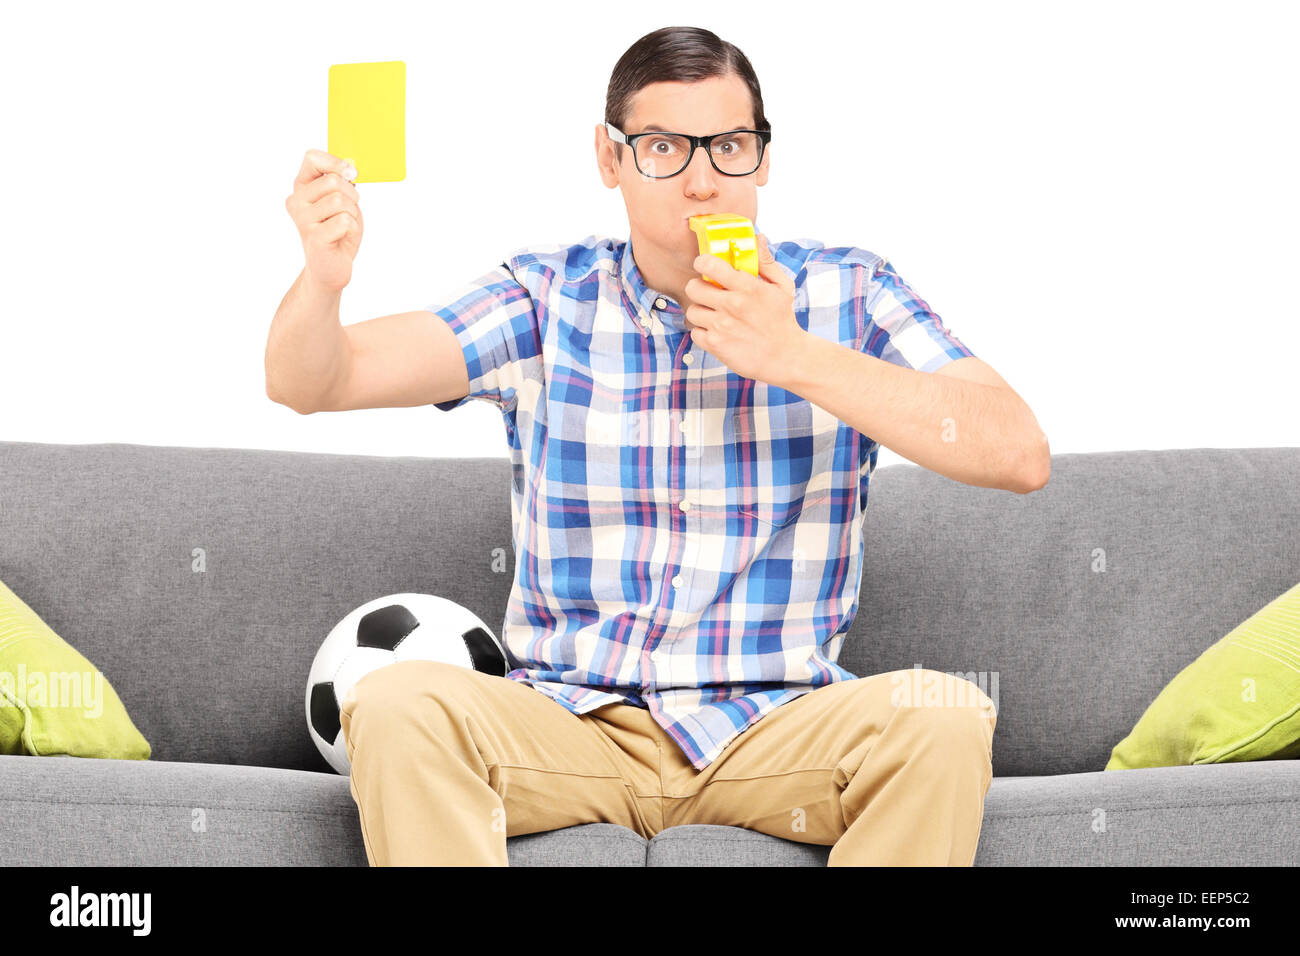 Football fan en colère tenant une carte jaune assis sur table isolés contre fond blanc Banque D'Images